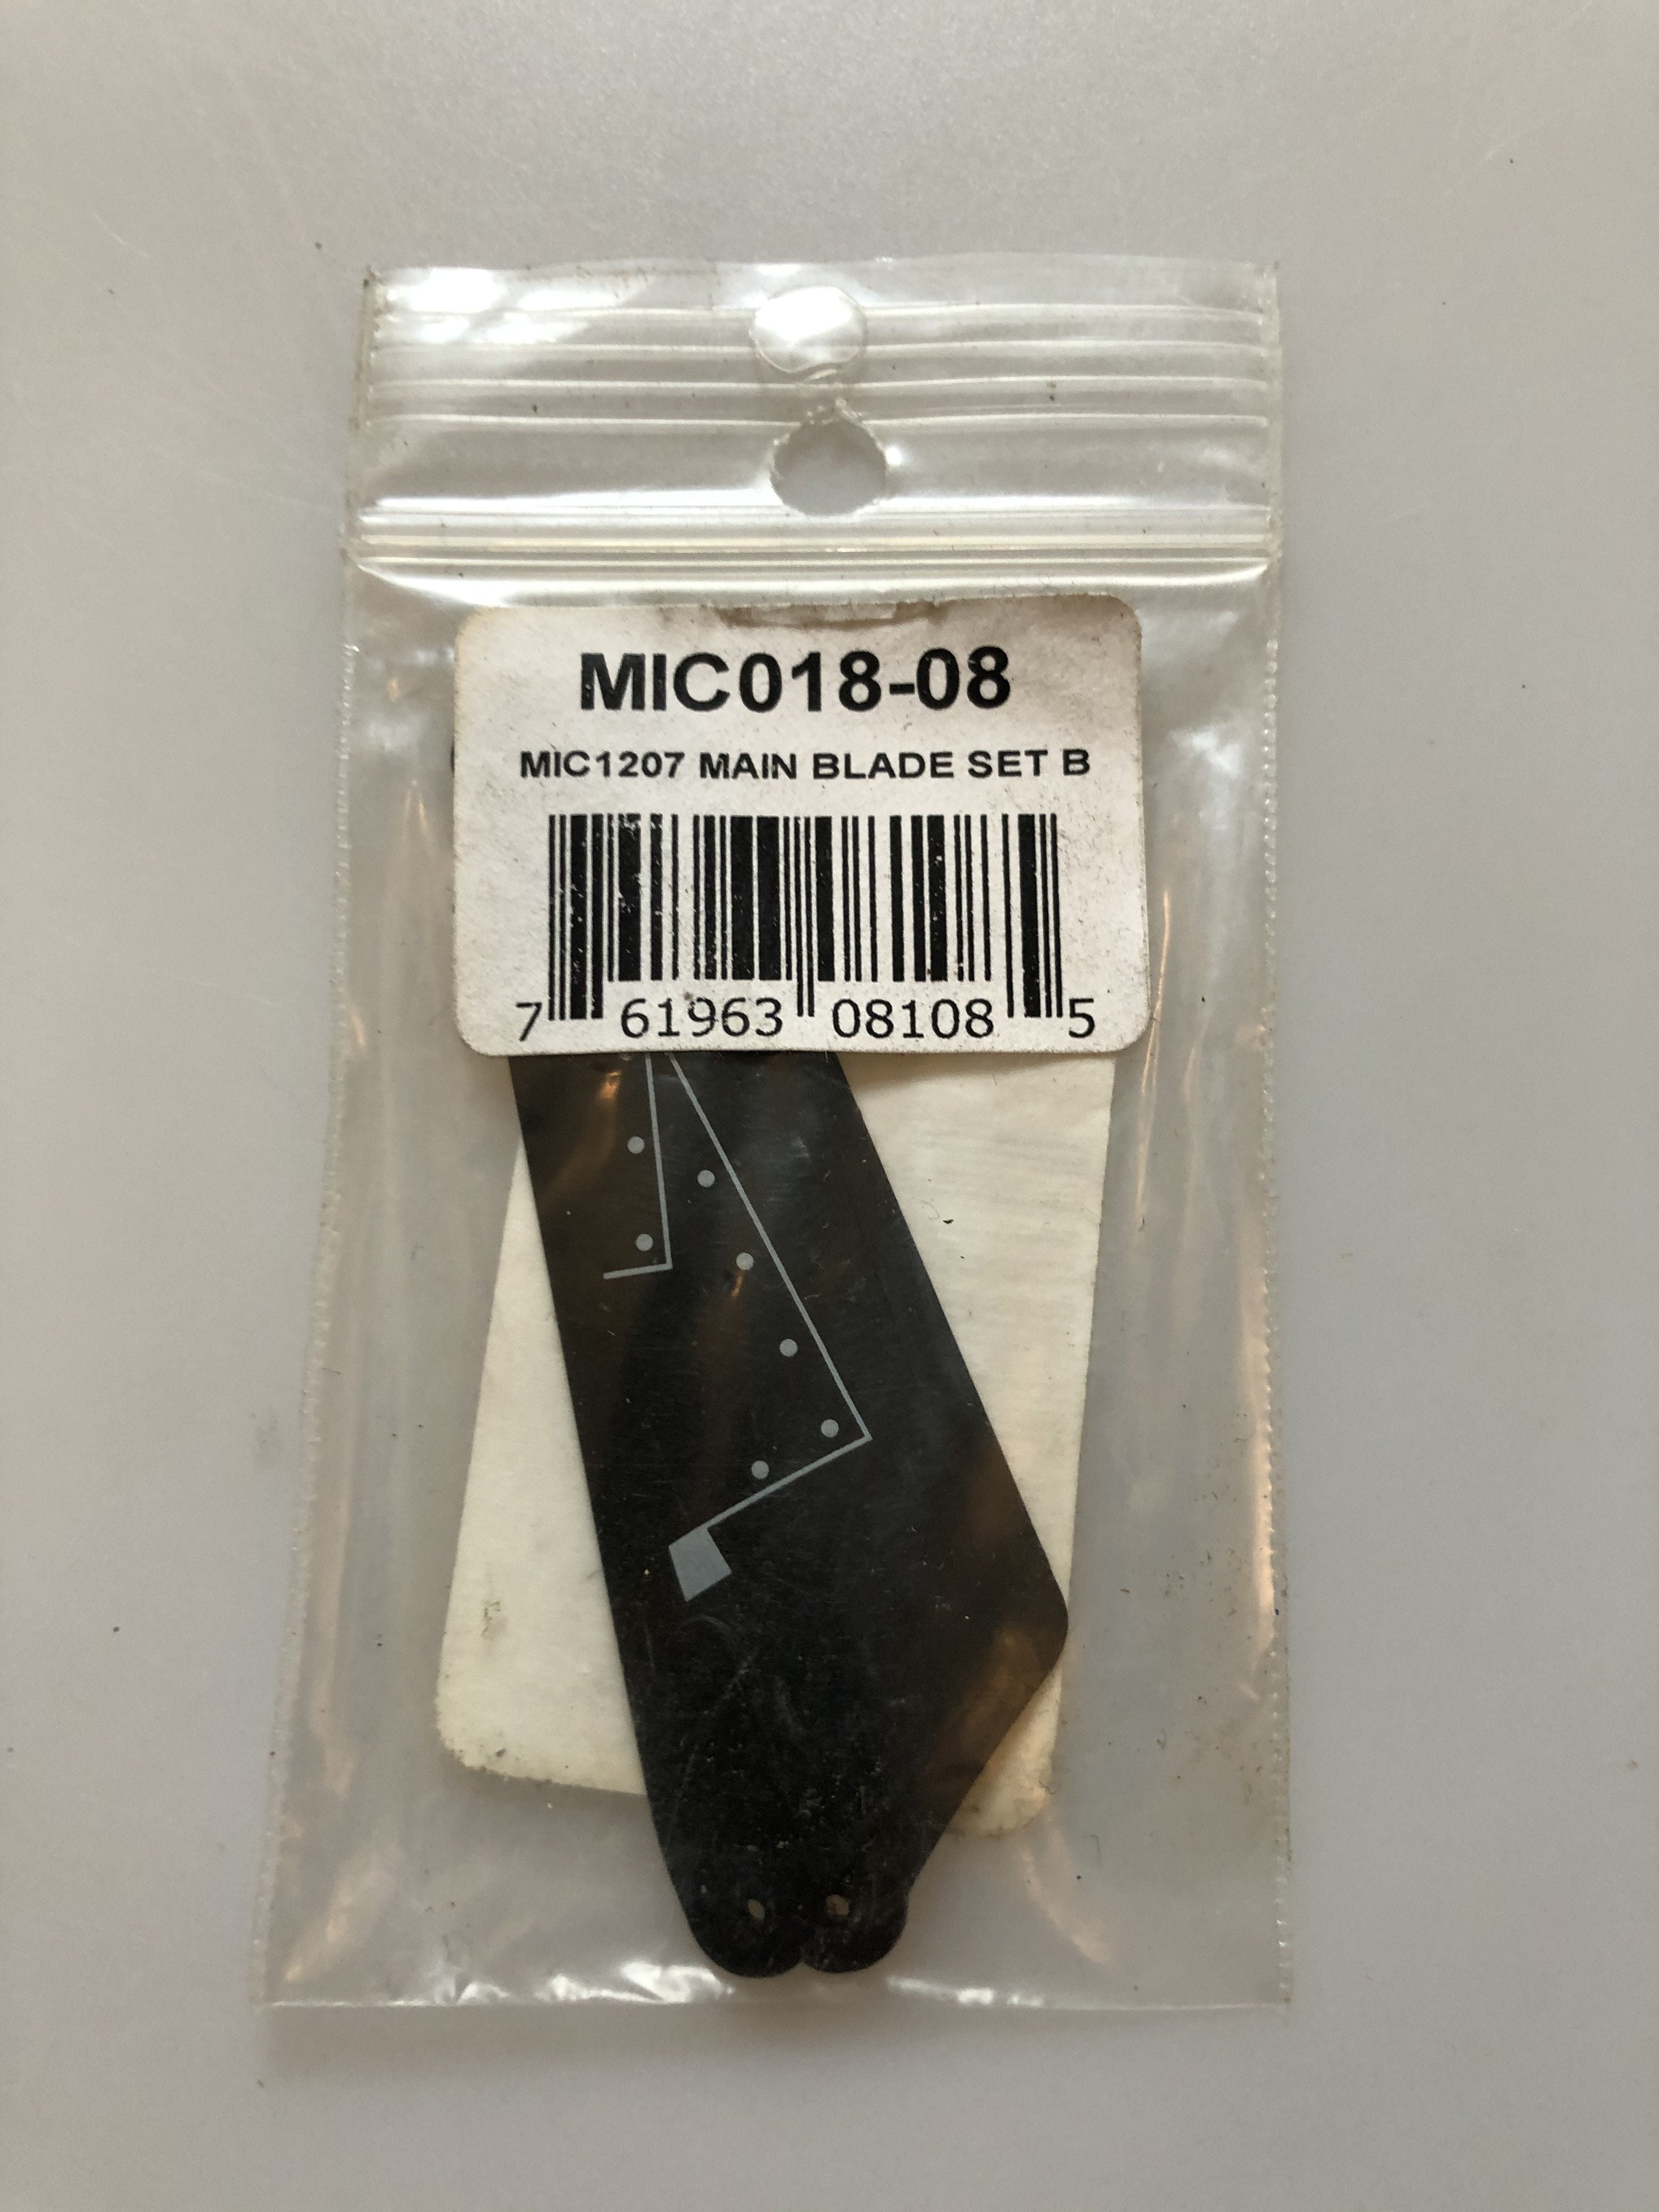 MIC MIC1207 Main Blade Set B MIC018-08